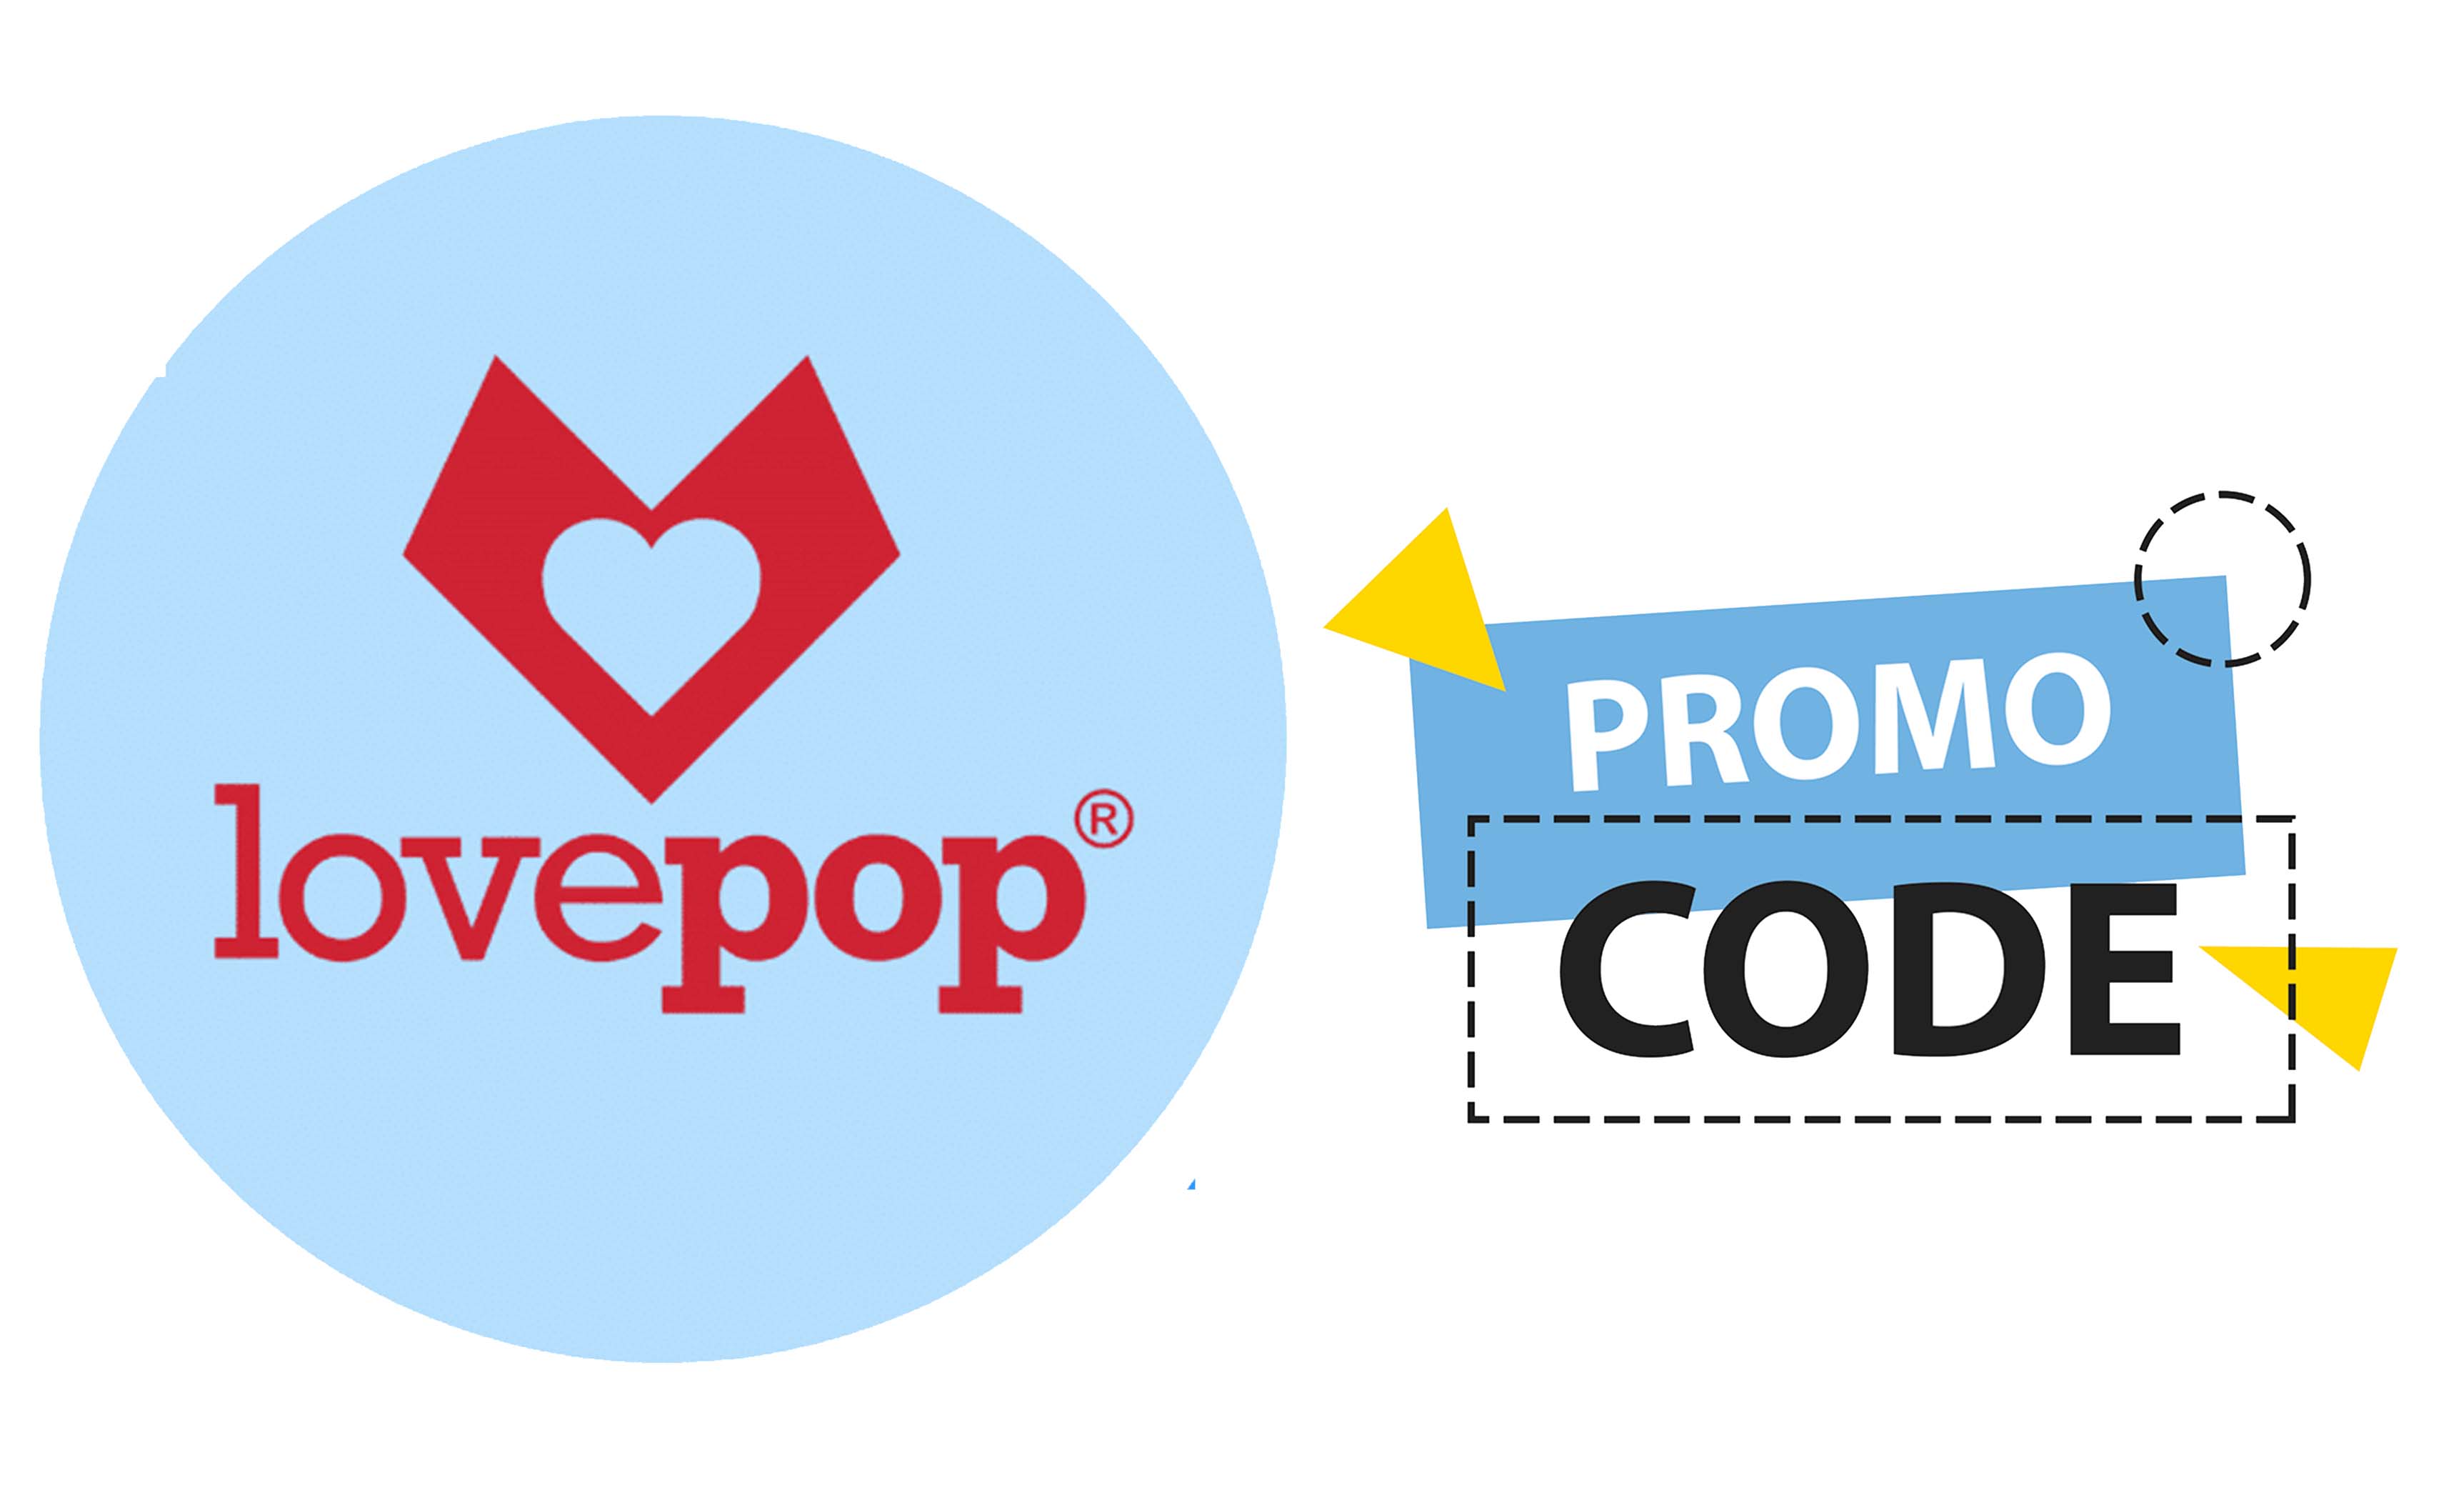 Lovepop Promo Code - Lovepop Account Login